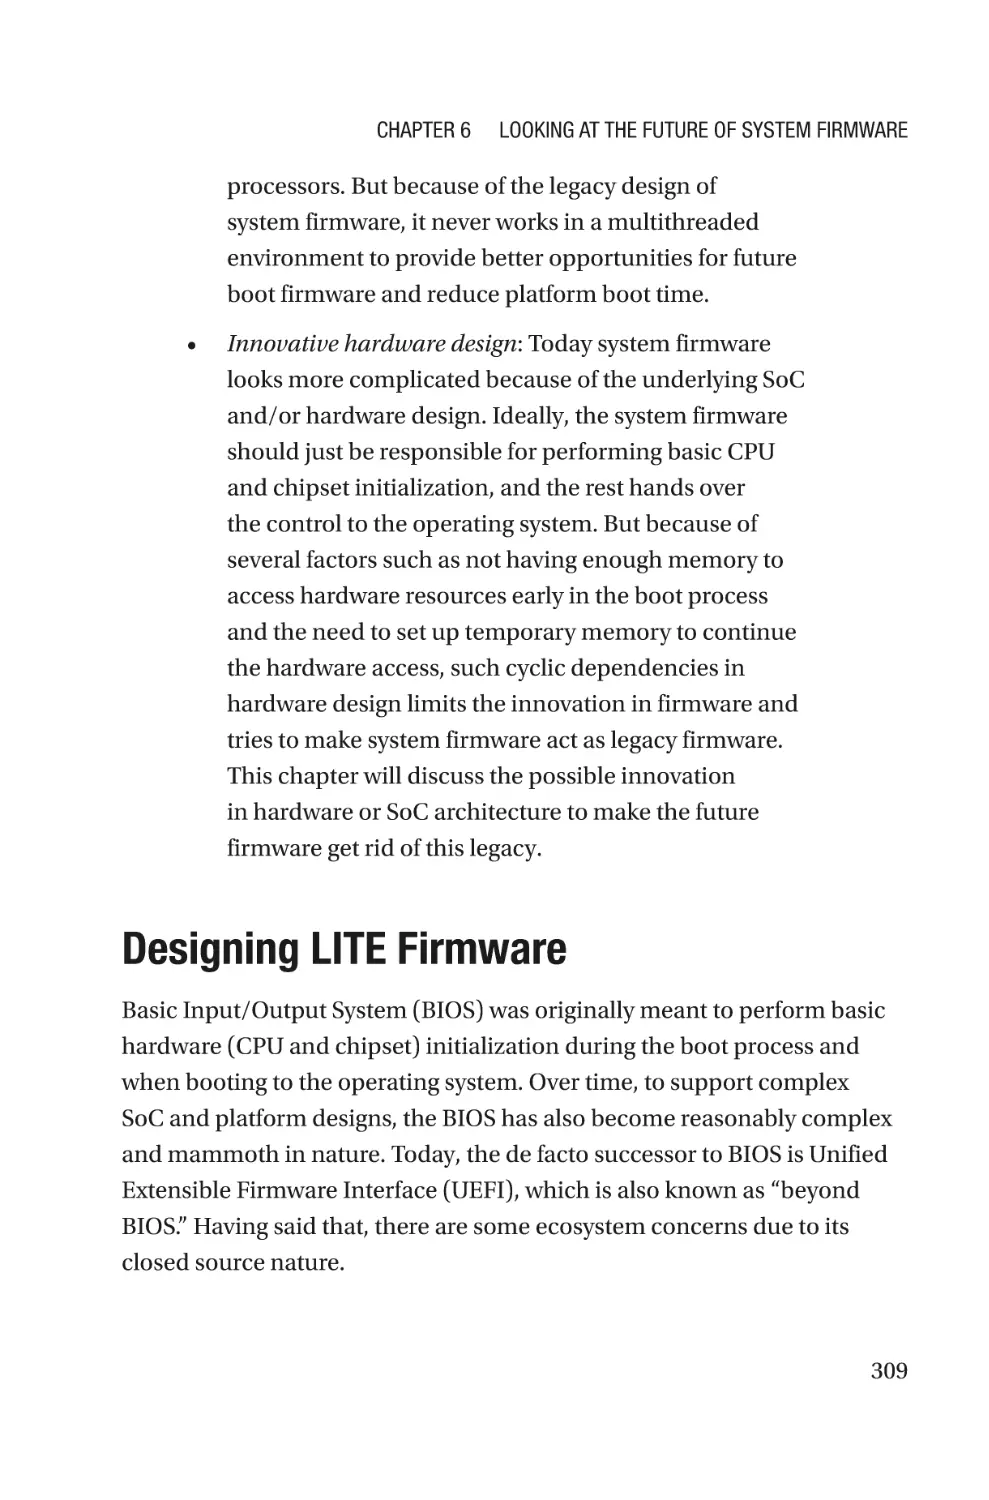 Designing LITE Firmware